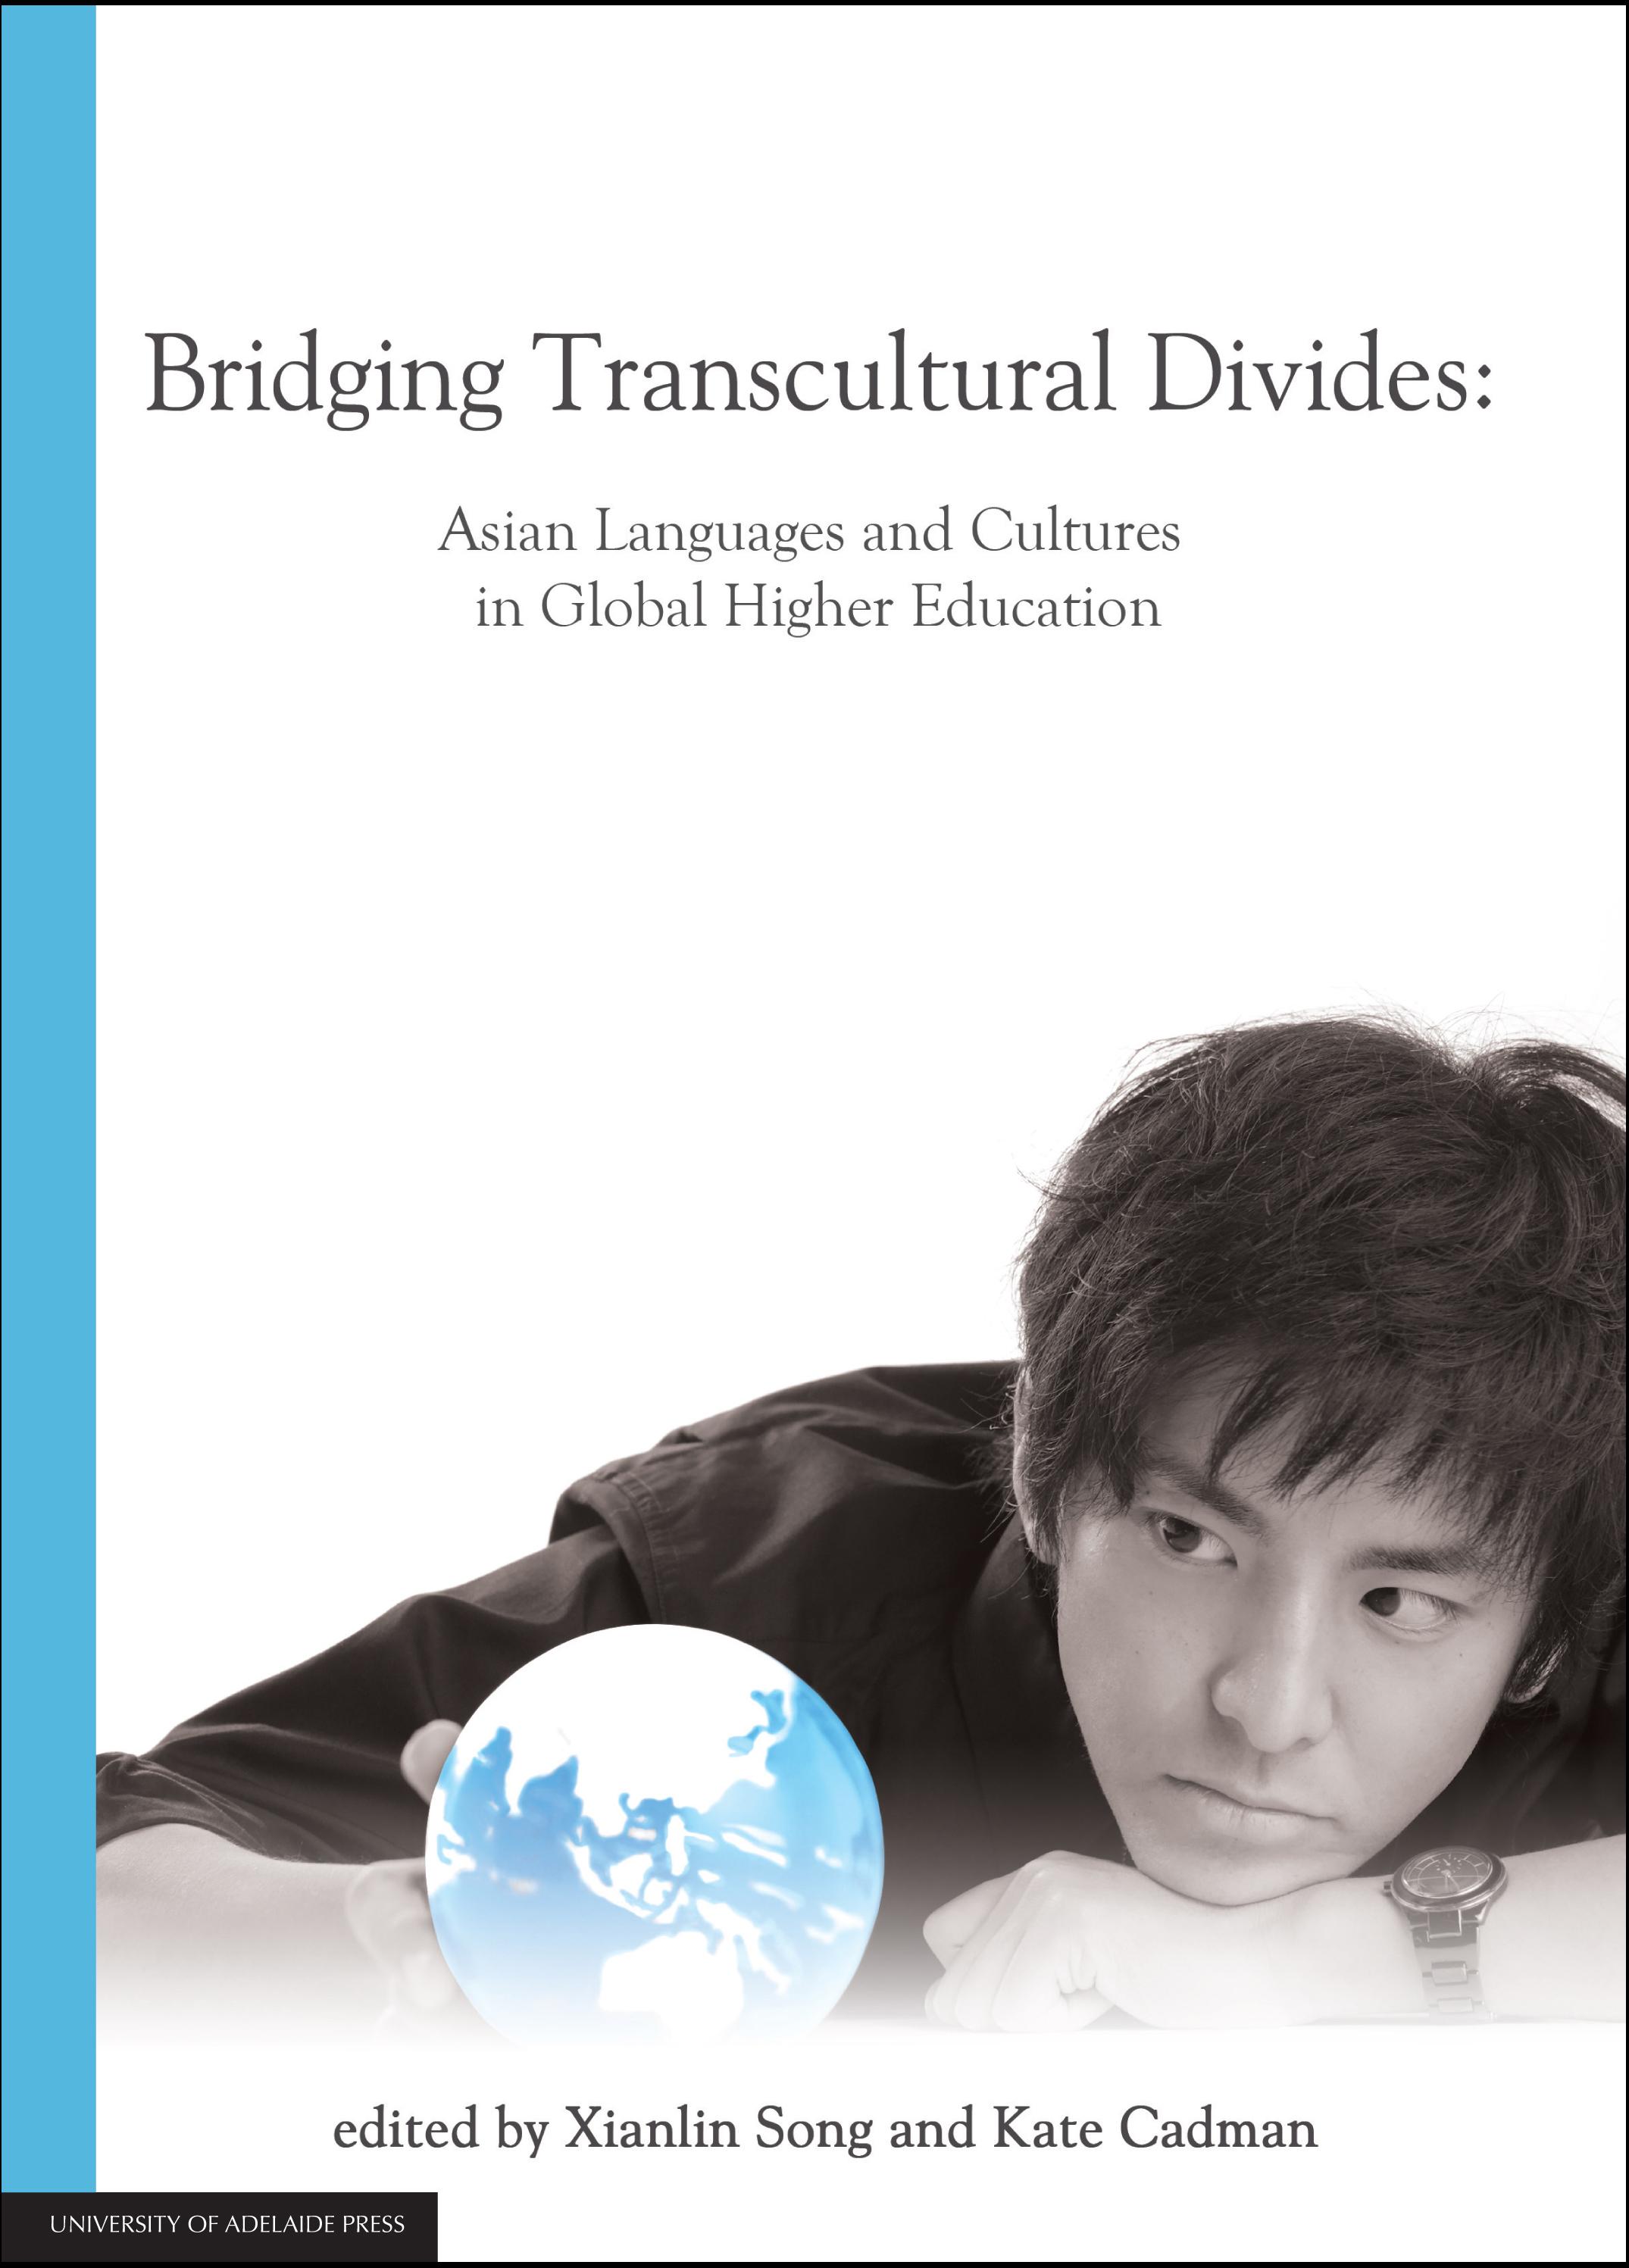 Bridging transcultural divides cover